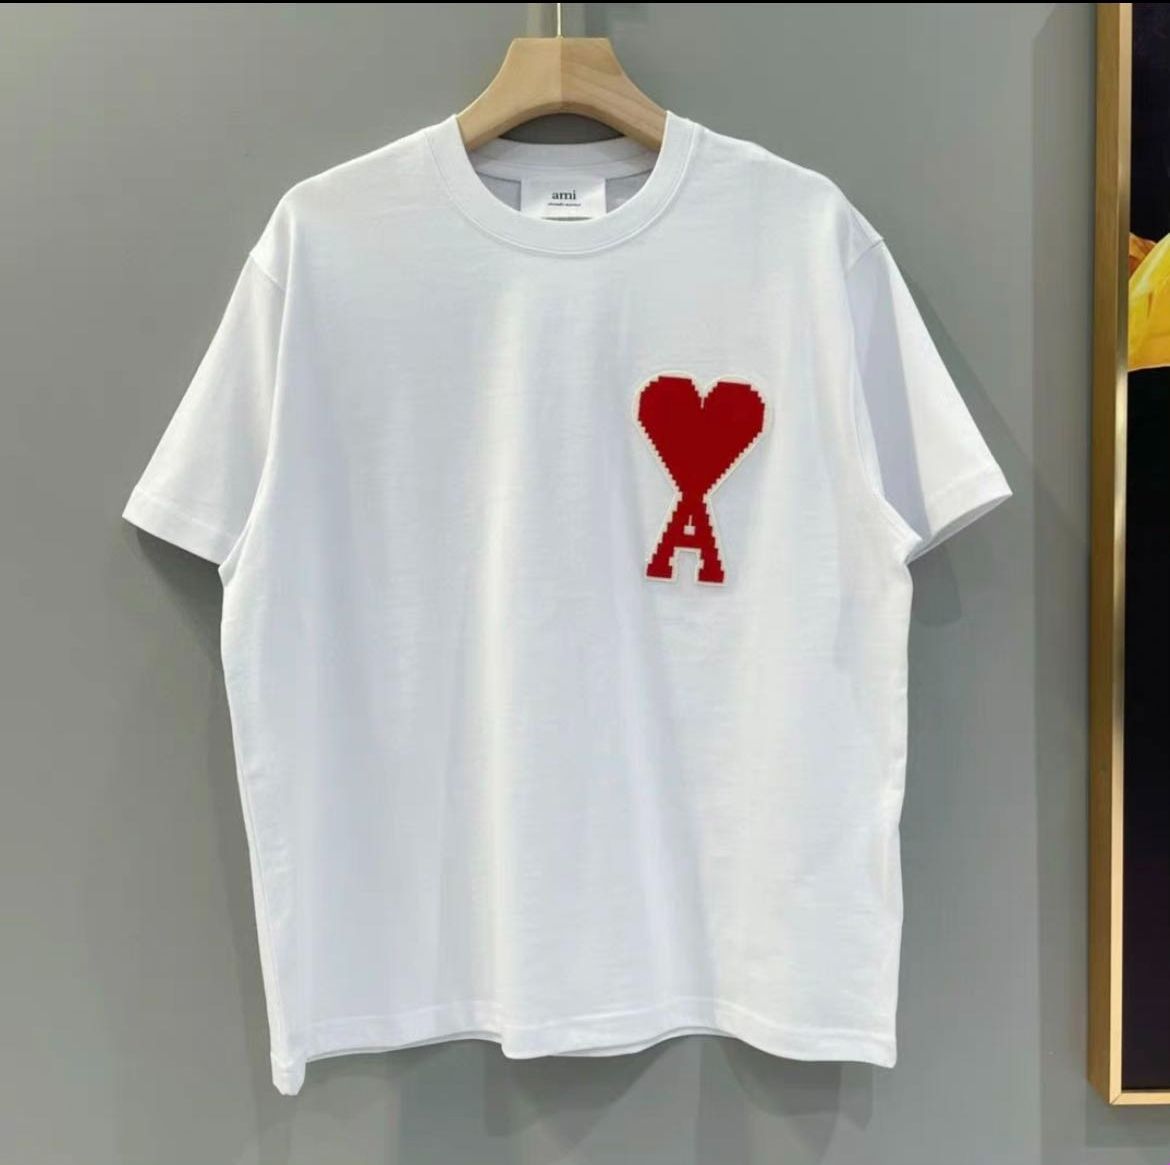 アミパリス · Amiparis ハートマーク トップス Tシャツ 男女兼用 刺繍 